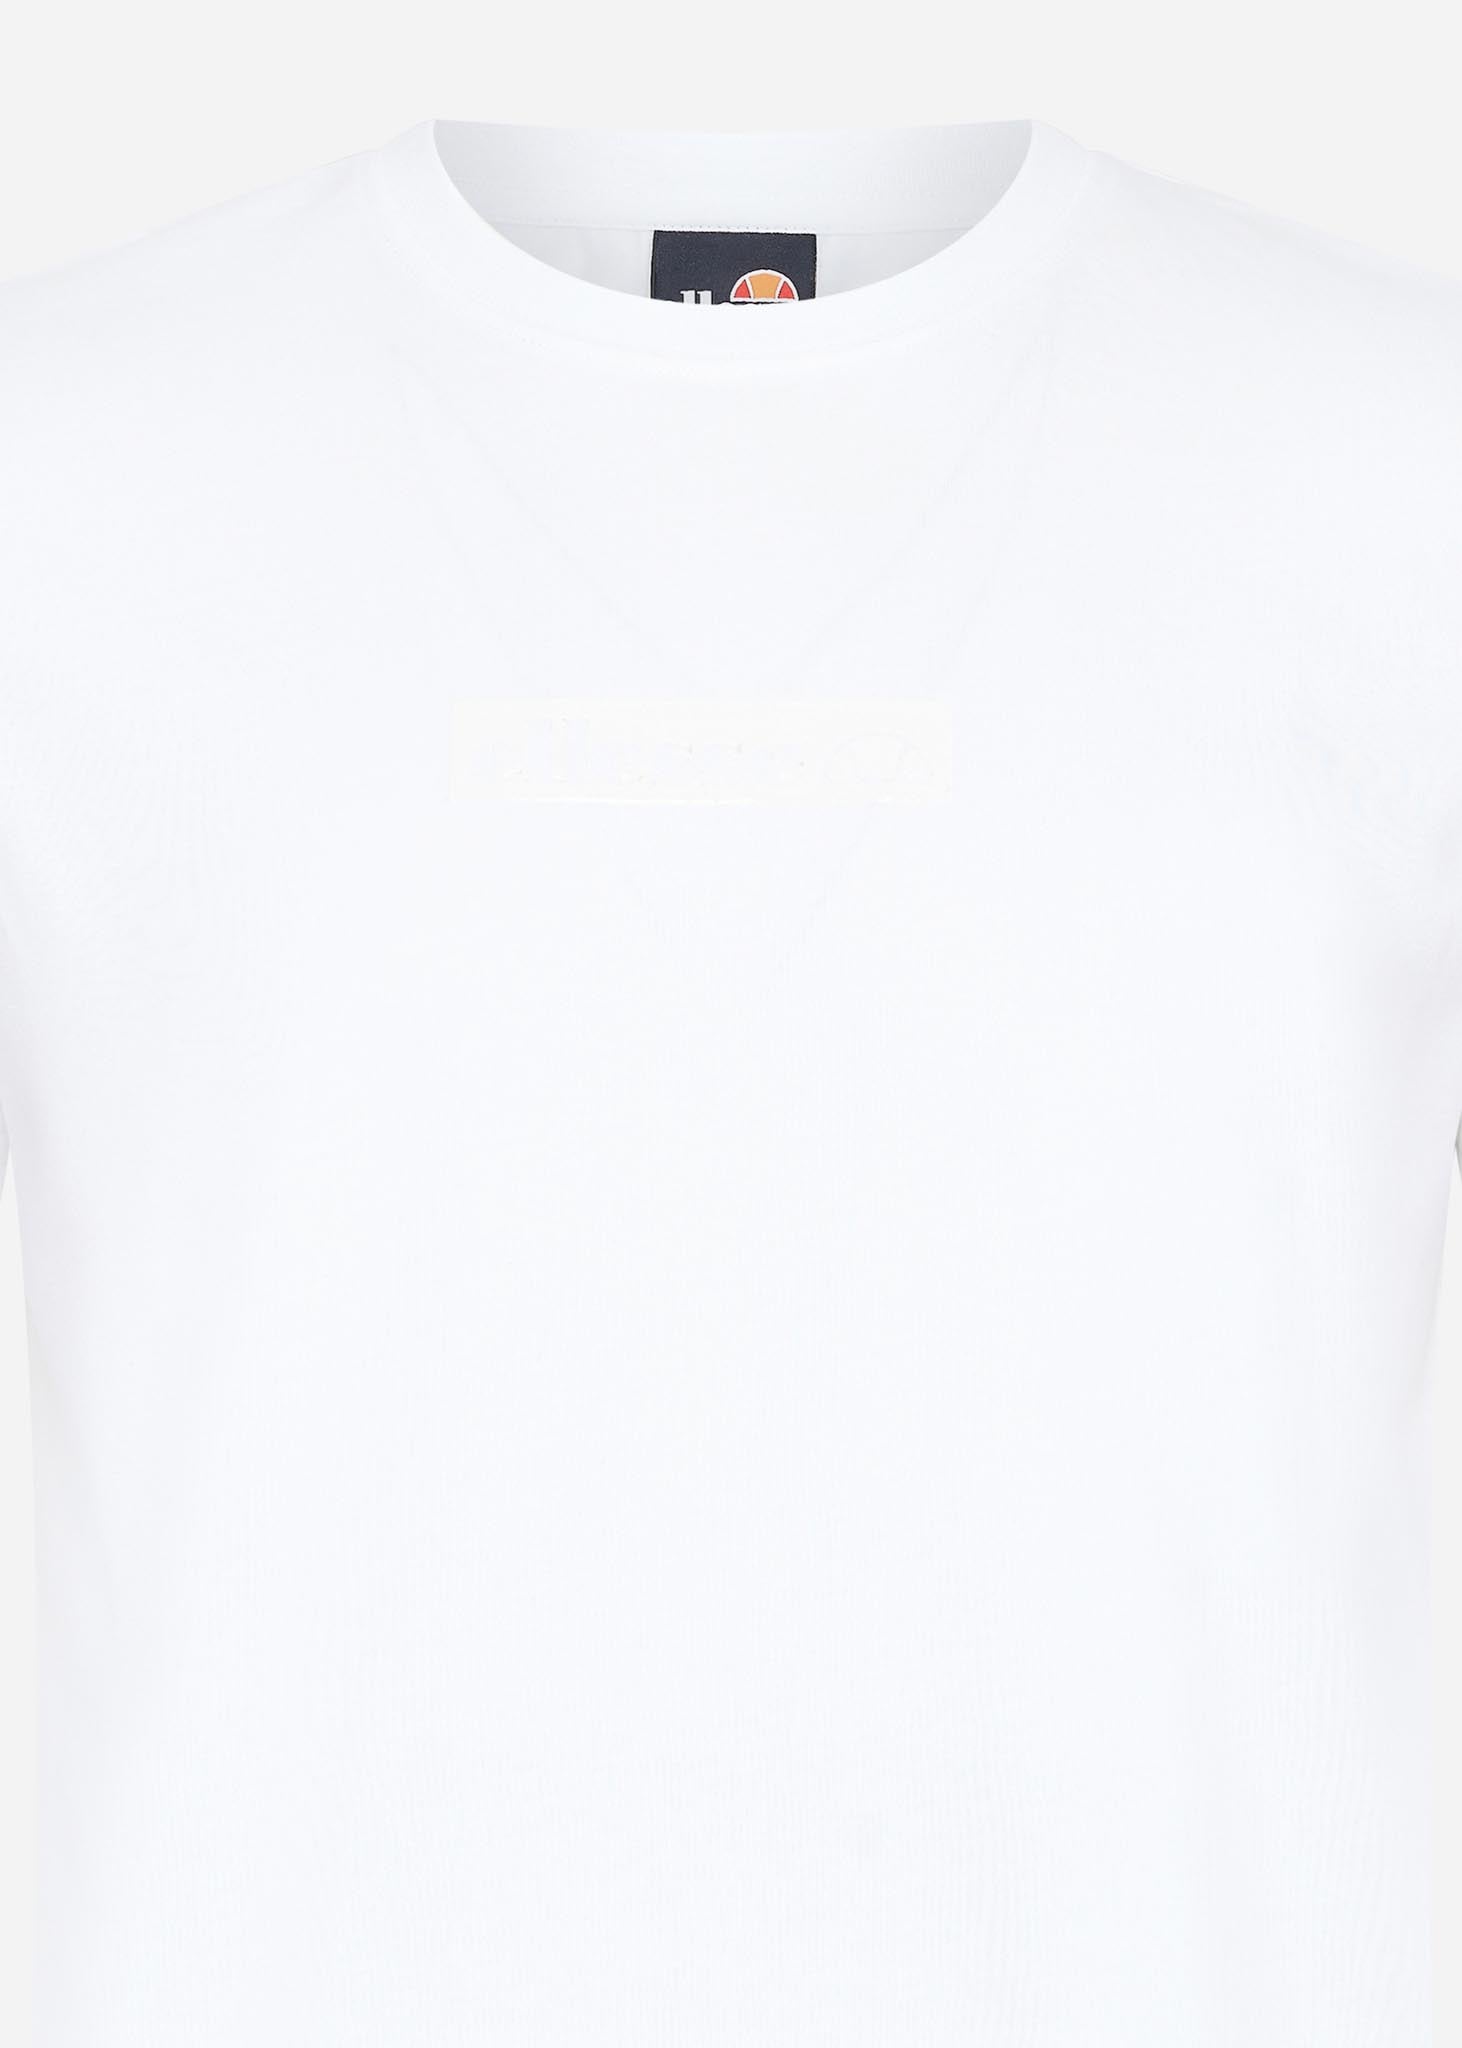 Ellesse T-shirts  Astrio tee - white 